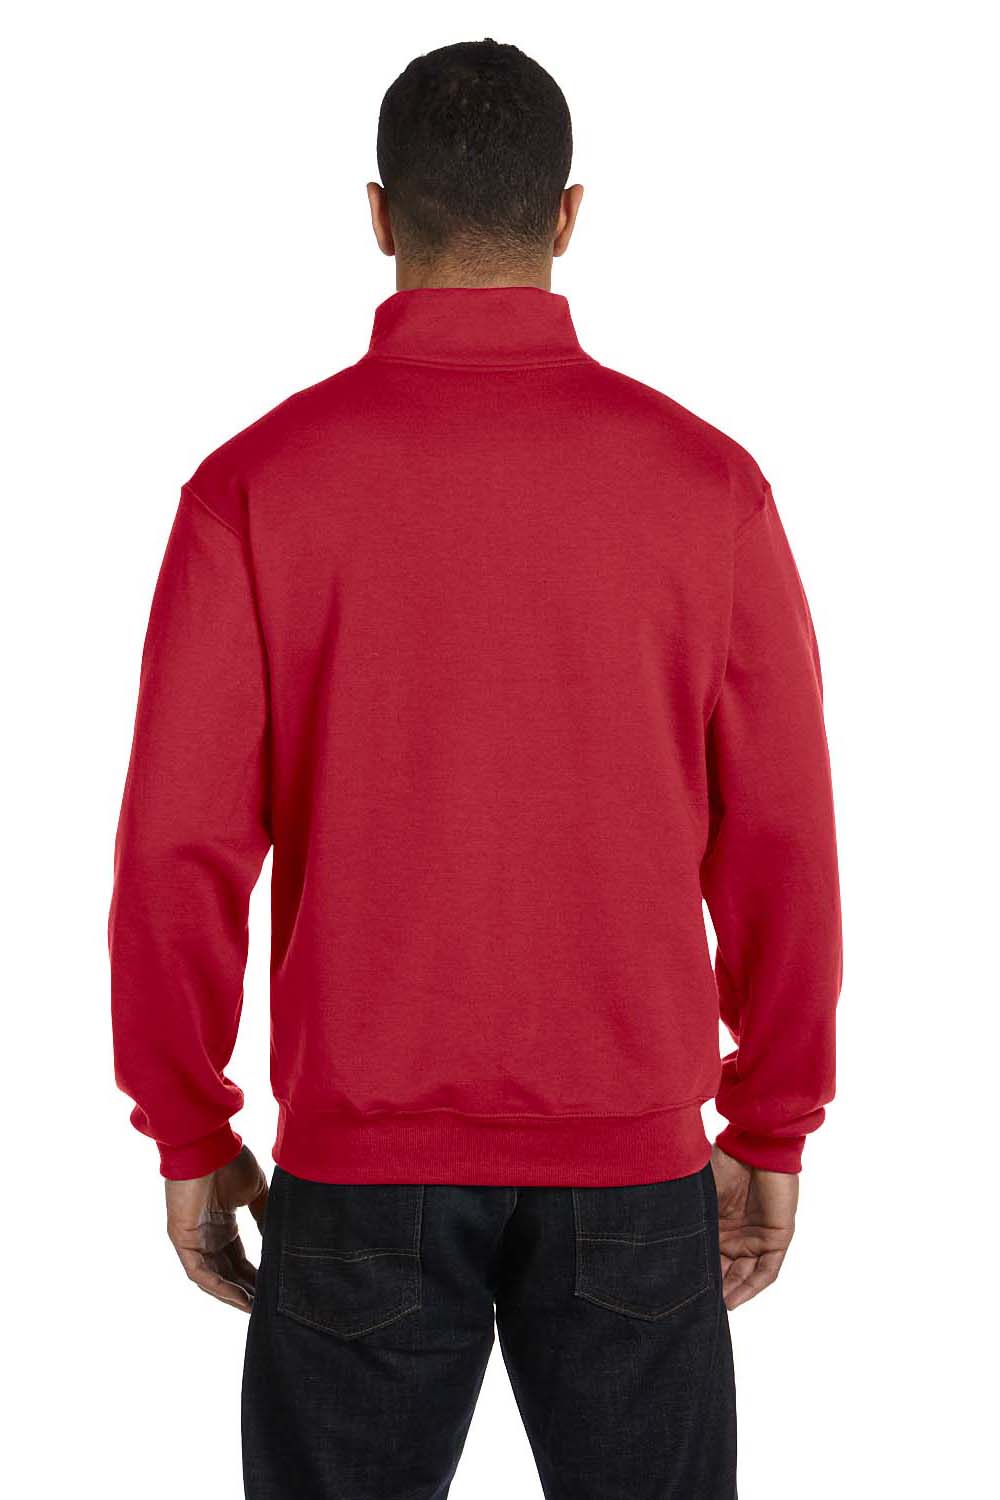 Jerzees 995M Mens NuBlend Fleece 1/4 Zip Sweatshirt Red Back